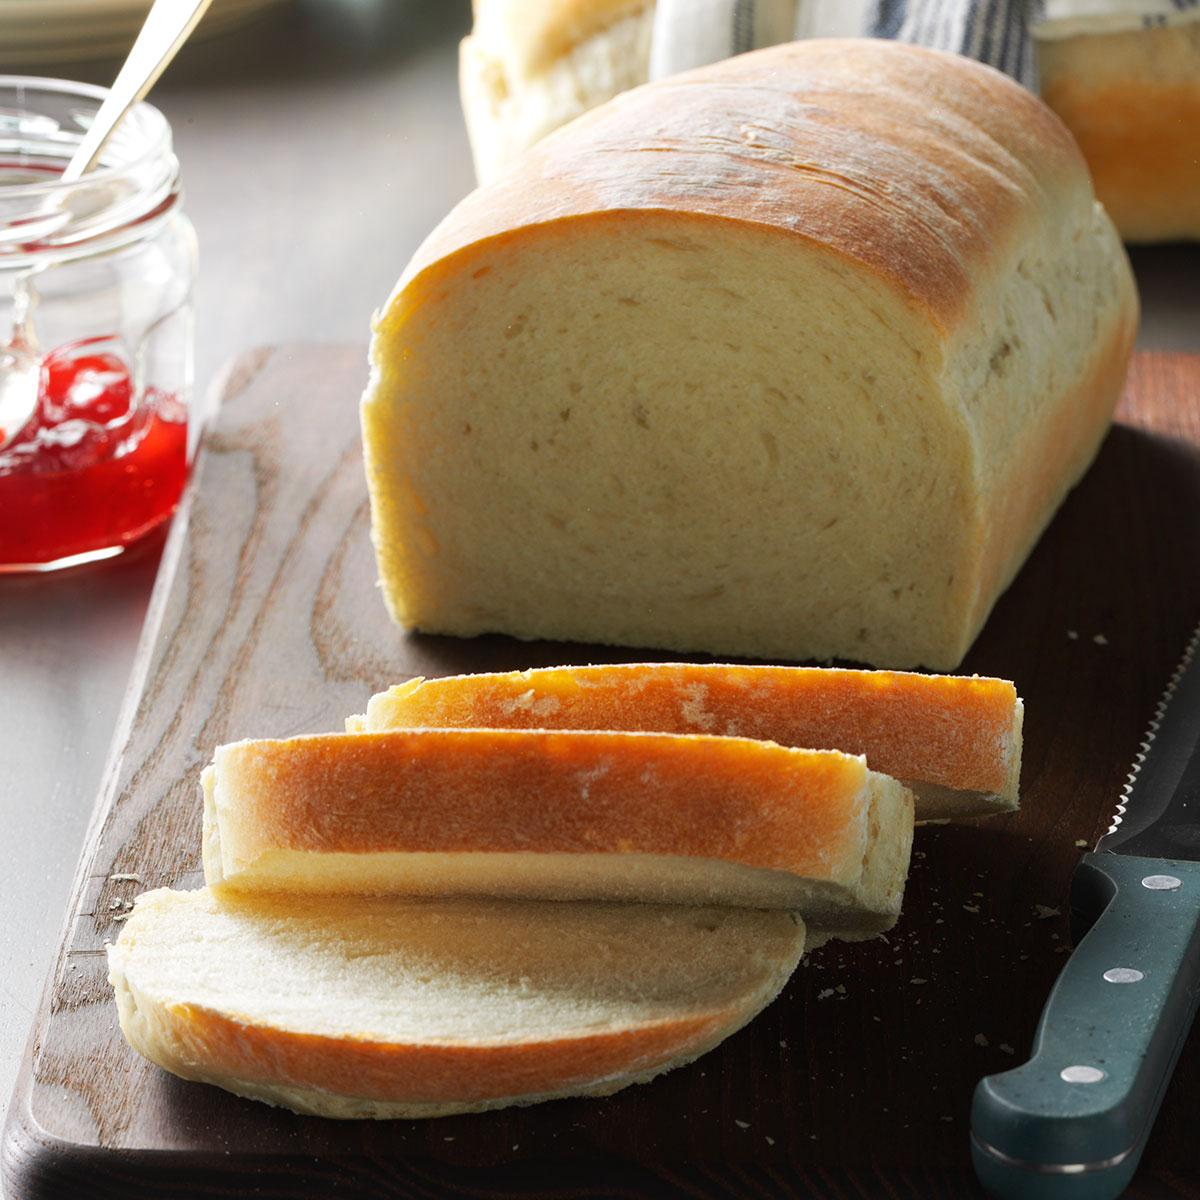 RÃ©sultat de recherche d'images pour "homemade bread"